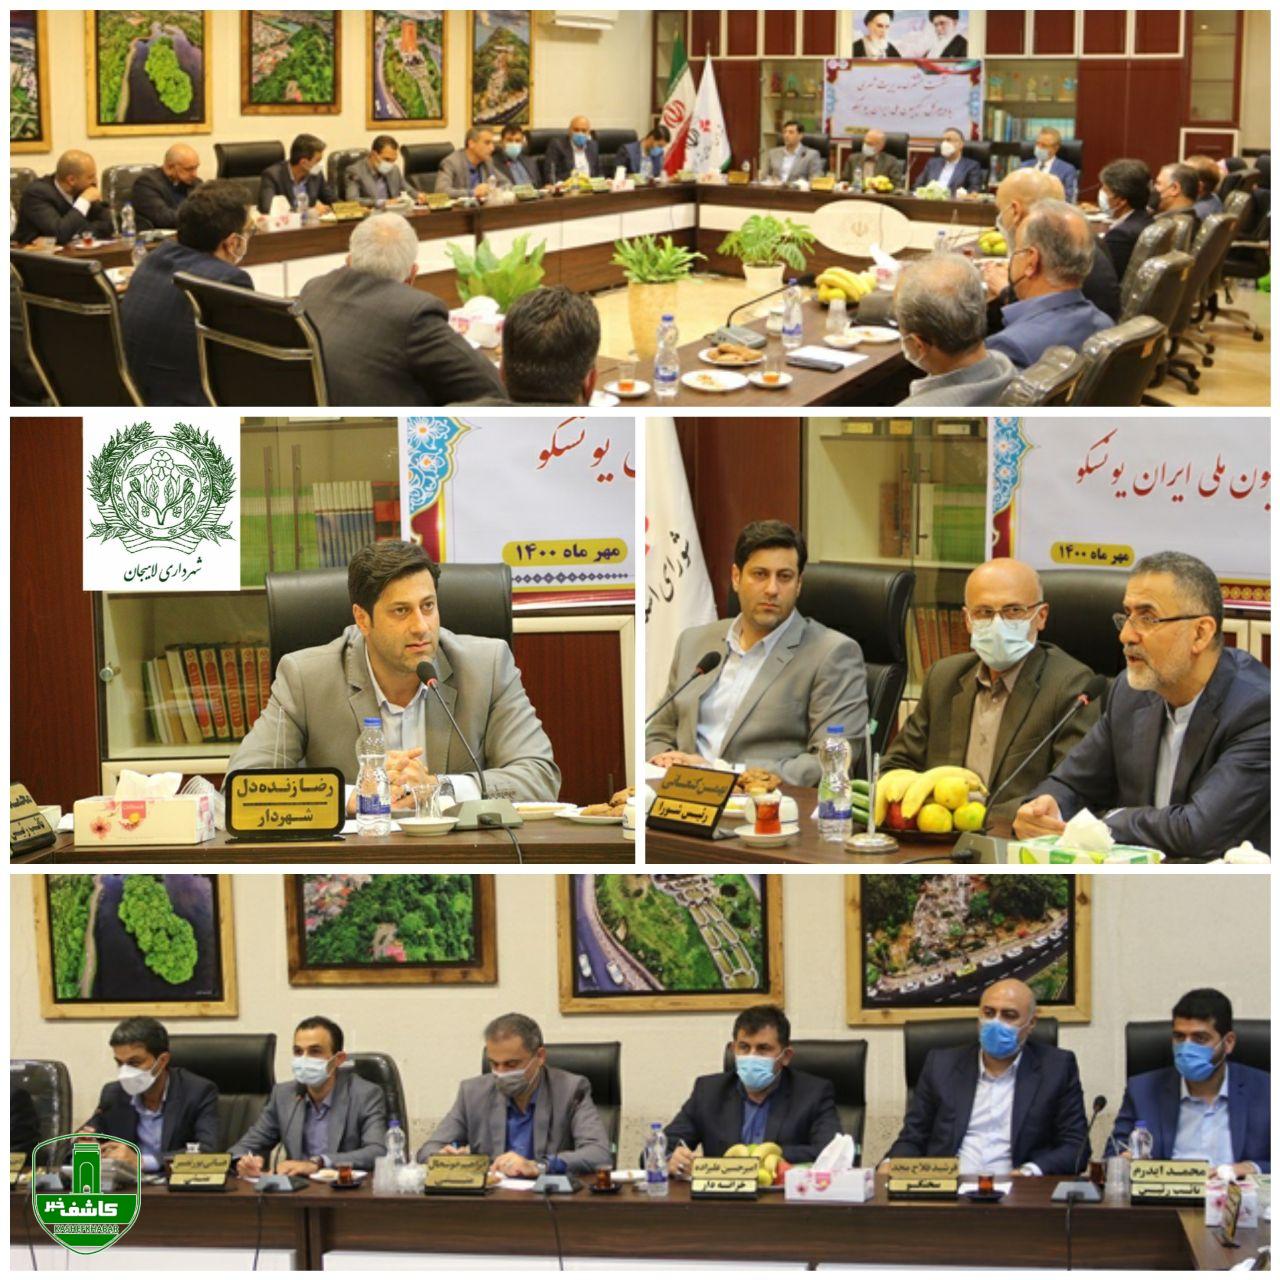 لاهیجان آماده ثبت پایتخت چای ایران و شهر خلاق یونسکو است